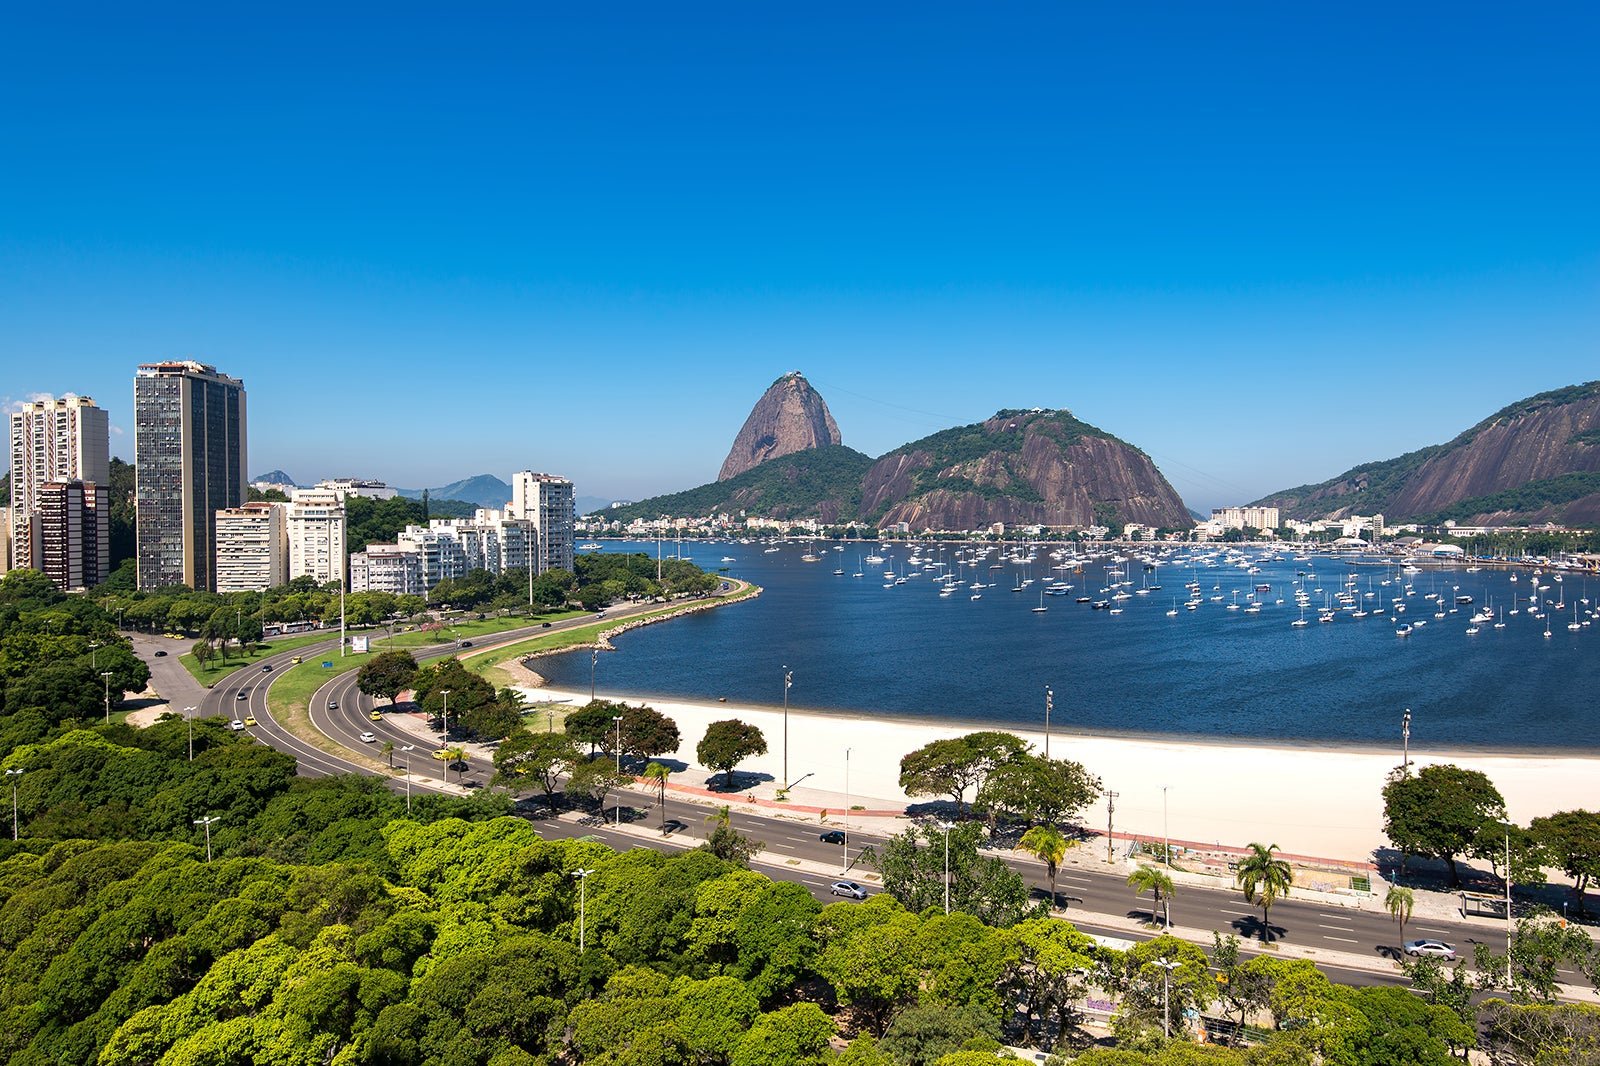 Lançamento Fmac General Goes Monteiro – Botafogo 2 e 3 Quartos: Descubra o Luxo e a Exclusividade